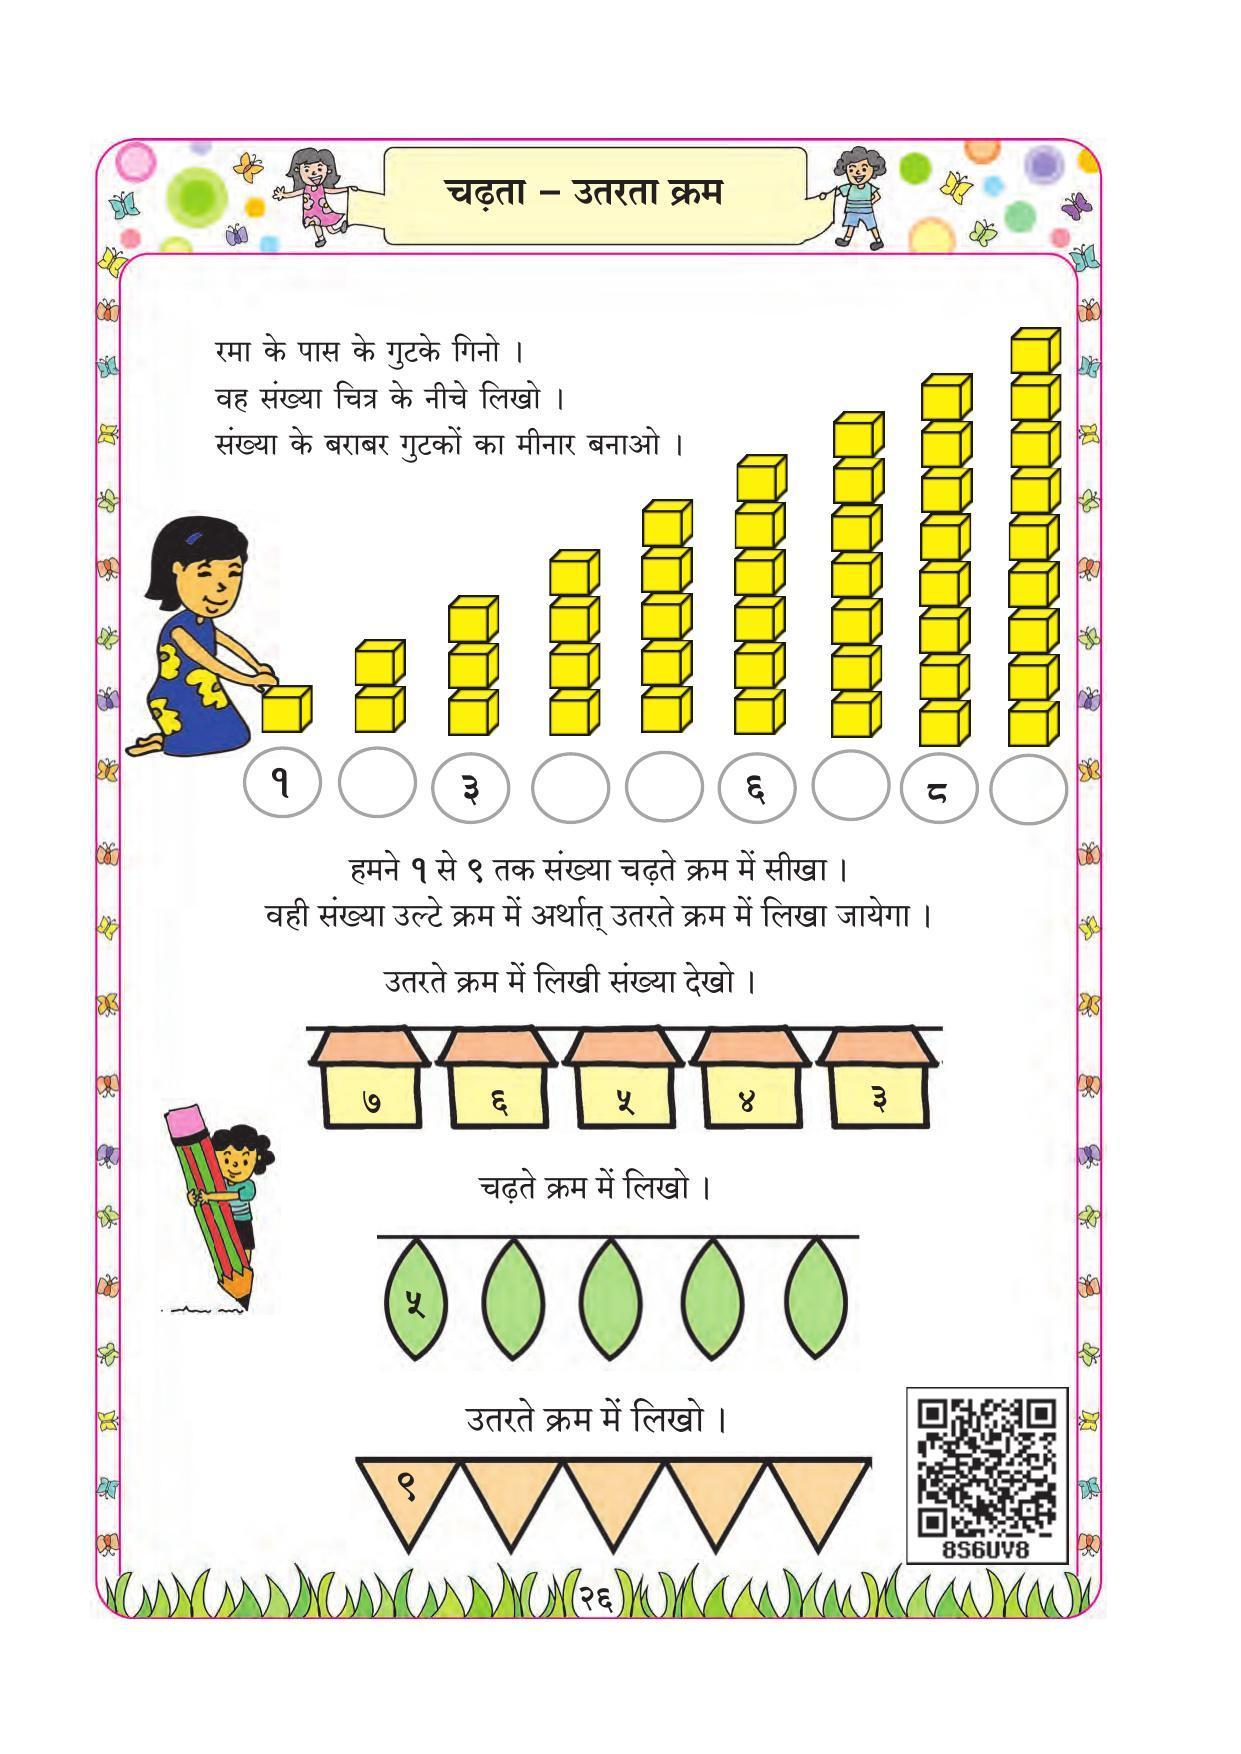 Maharashtra Board Class 1 Maths (Hindi Medium) Textbook - Page 36